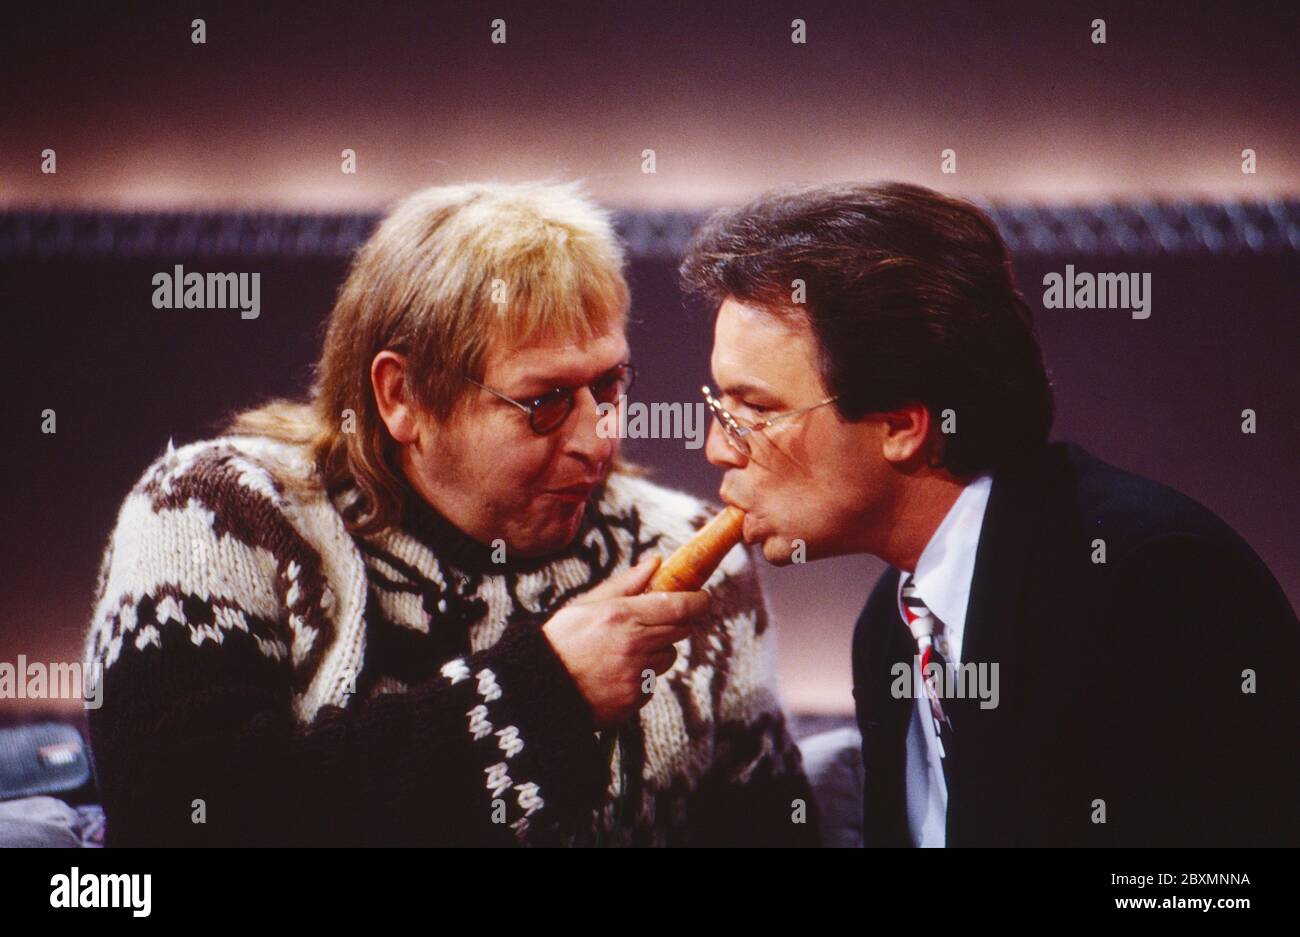 Wetten dass, Spielshow, Deutschland 1992, Gast Dieter Krebs als Martin füttert moderatore Wolfgang Lippert mit einer Karotte Foto Stock